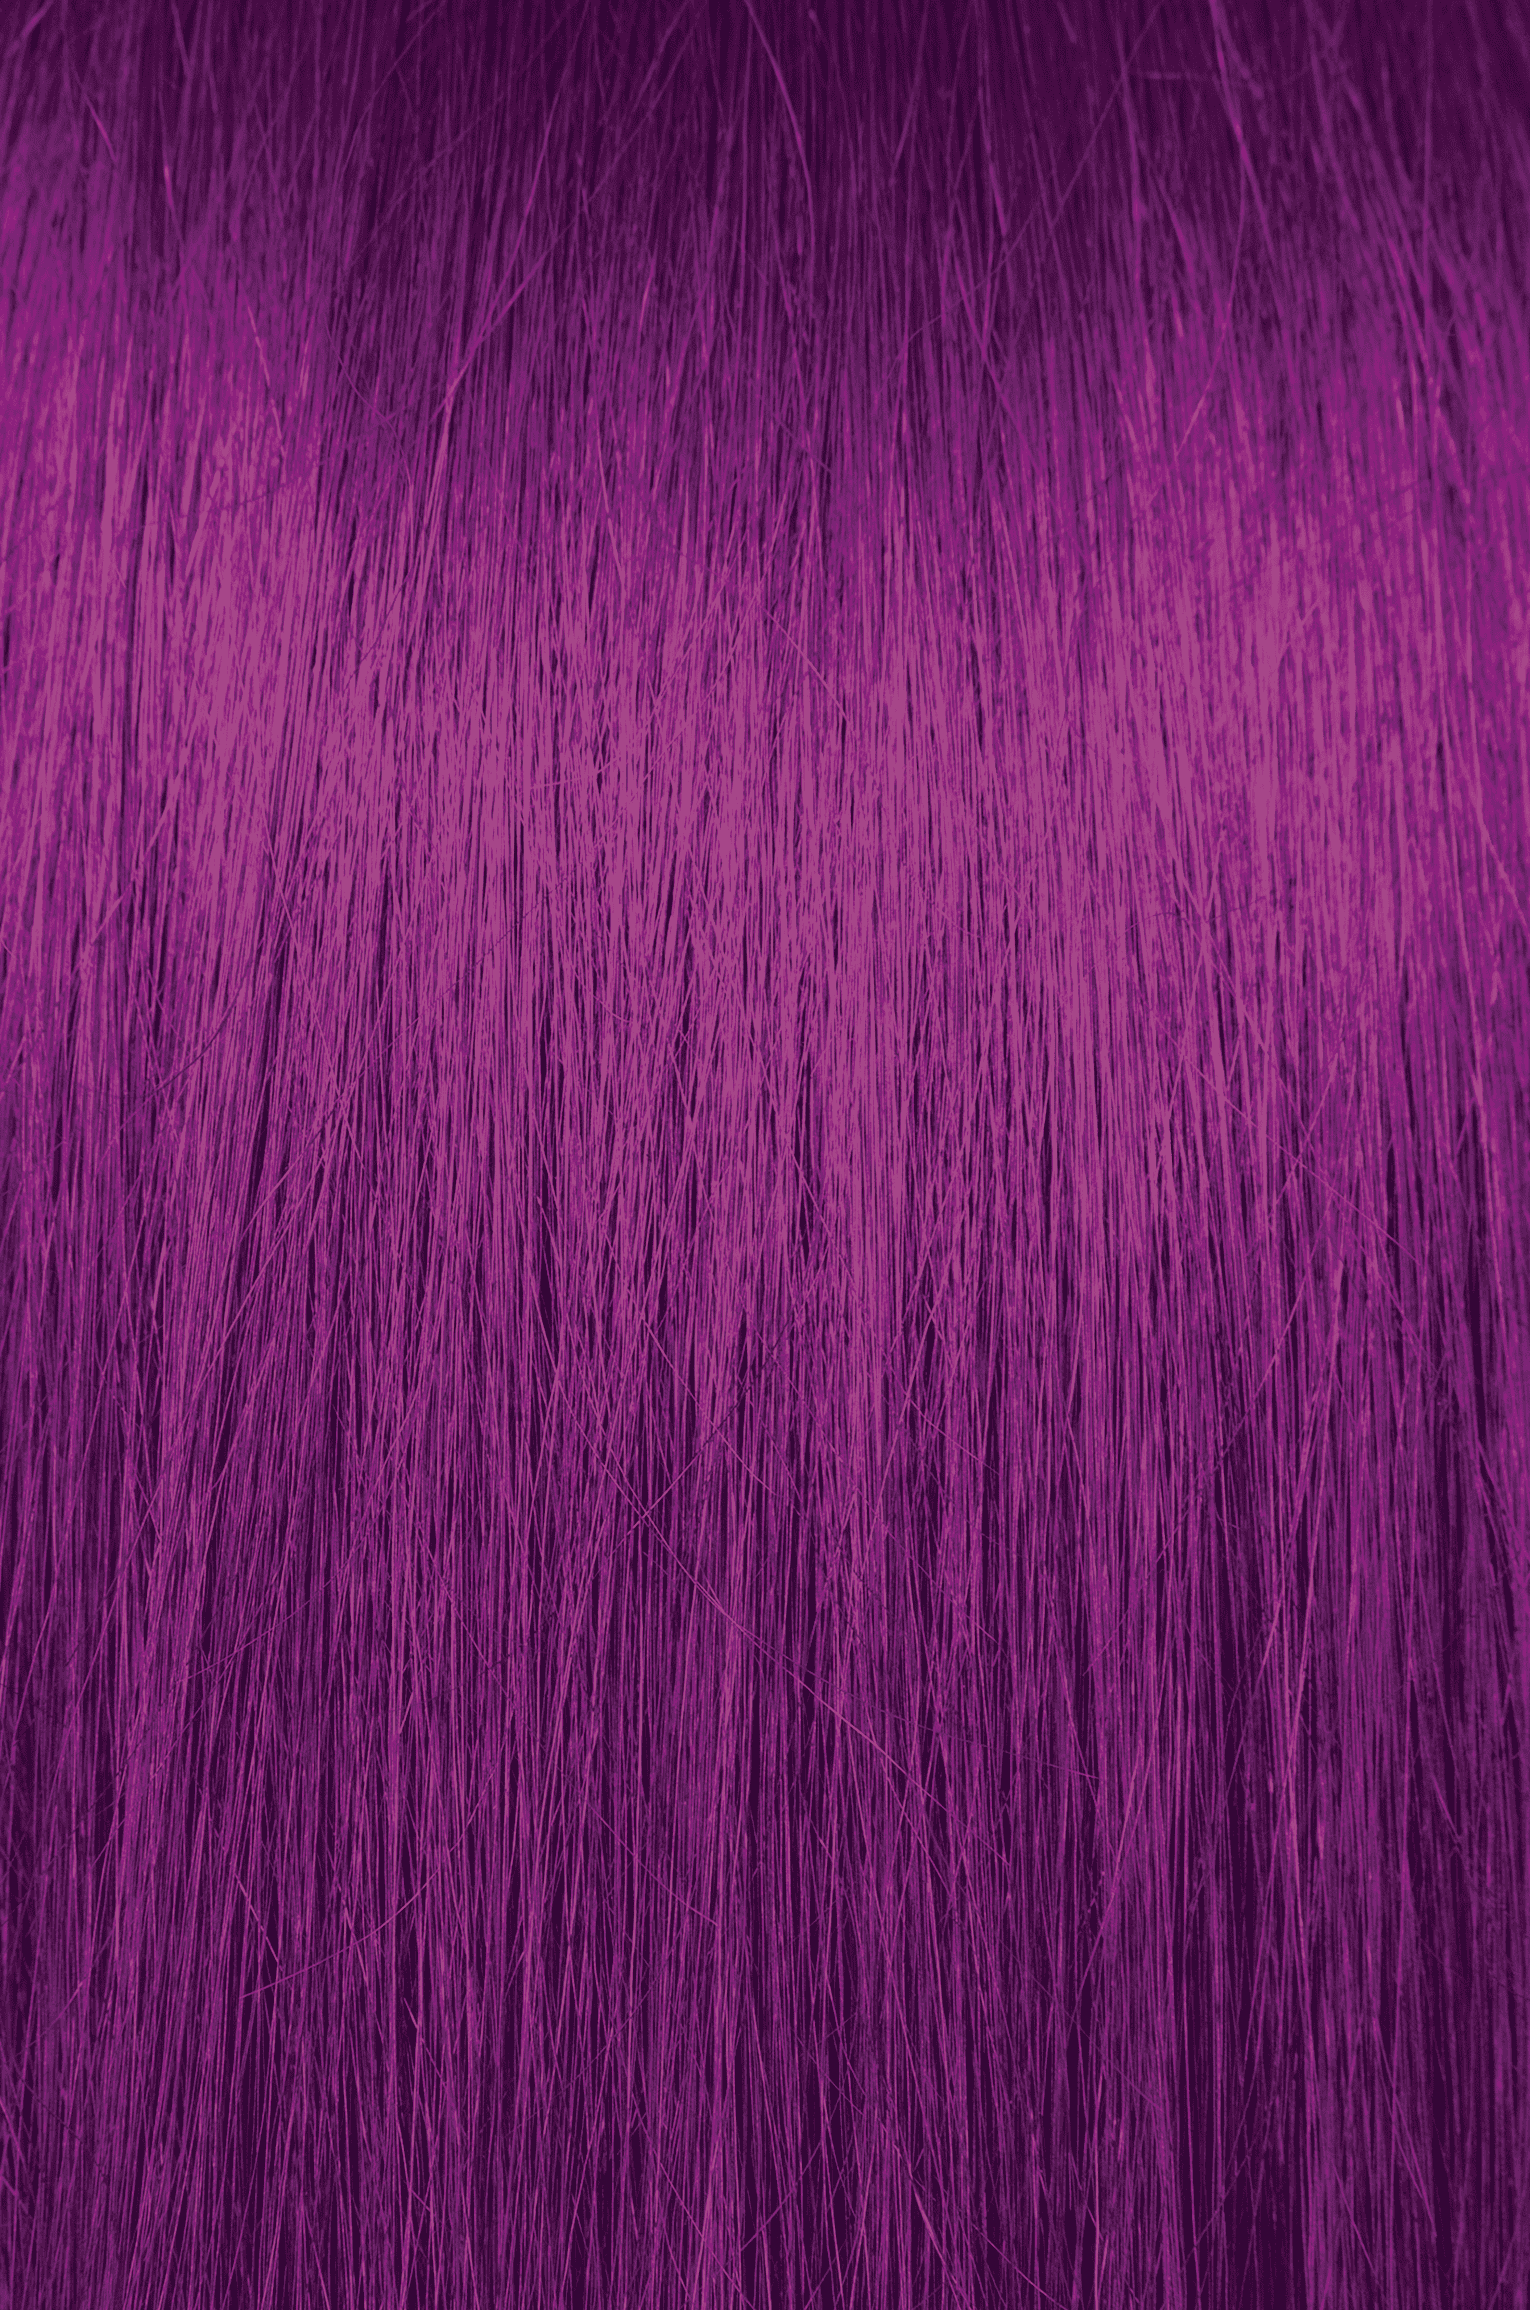 Pravana ChromaSilk VIVIDS Purple Tourmaline